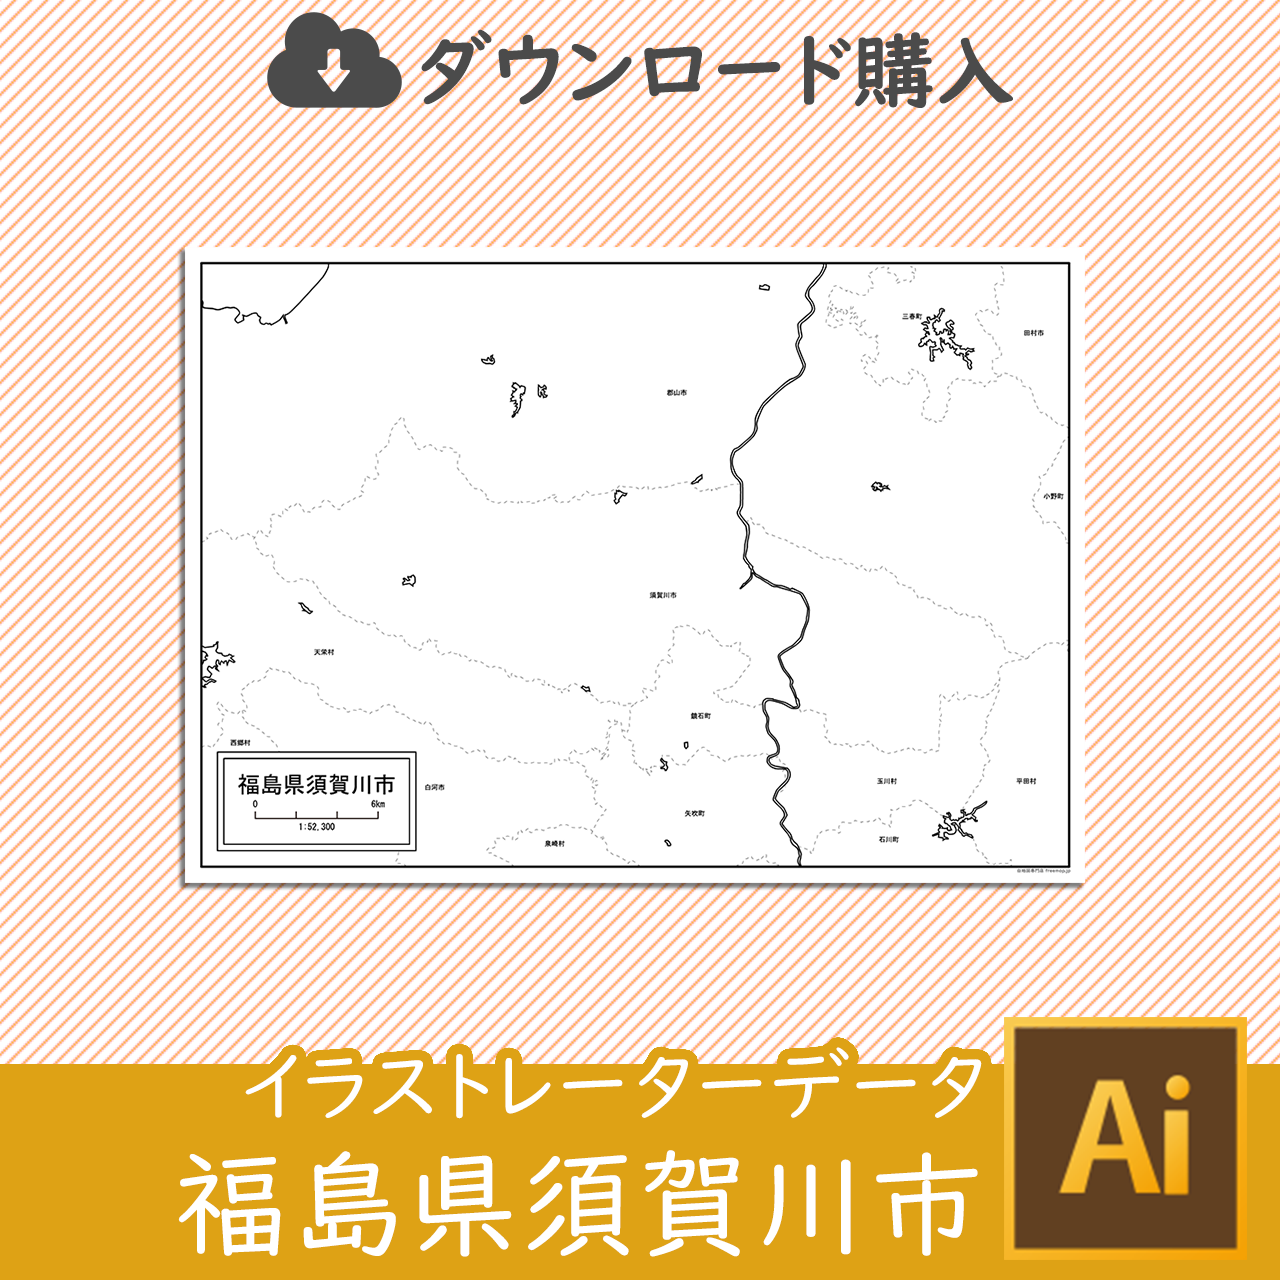 須賀川市のサムネイル画像